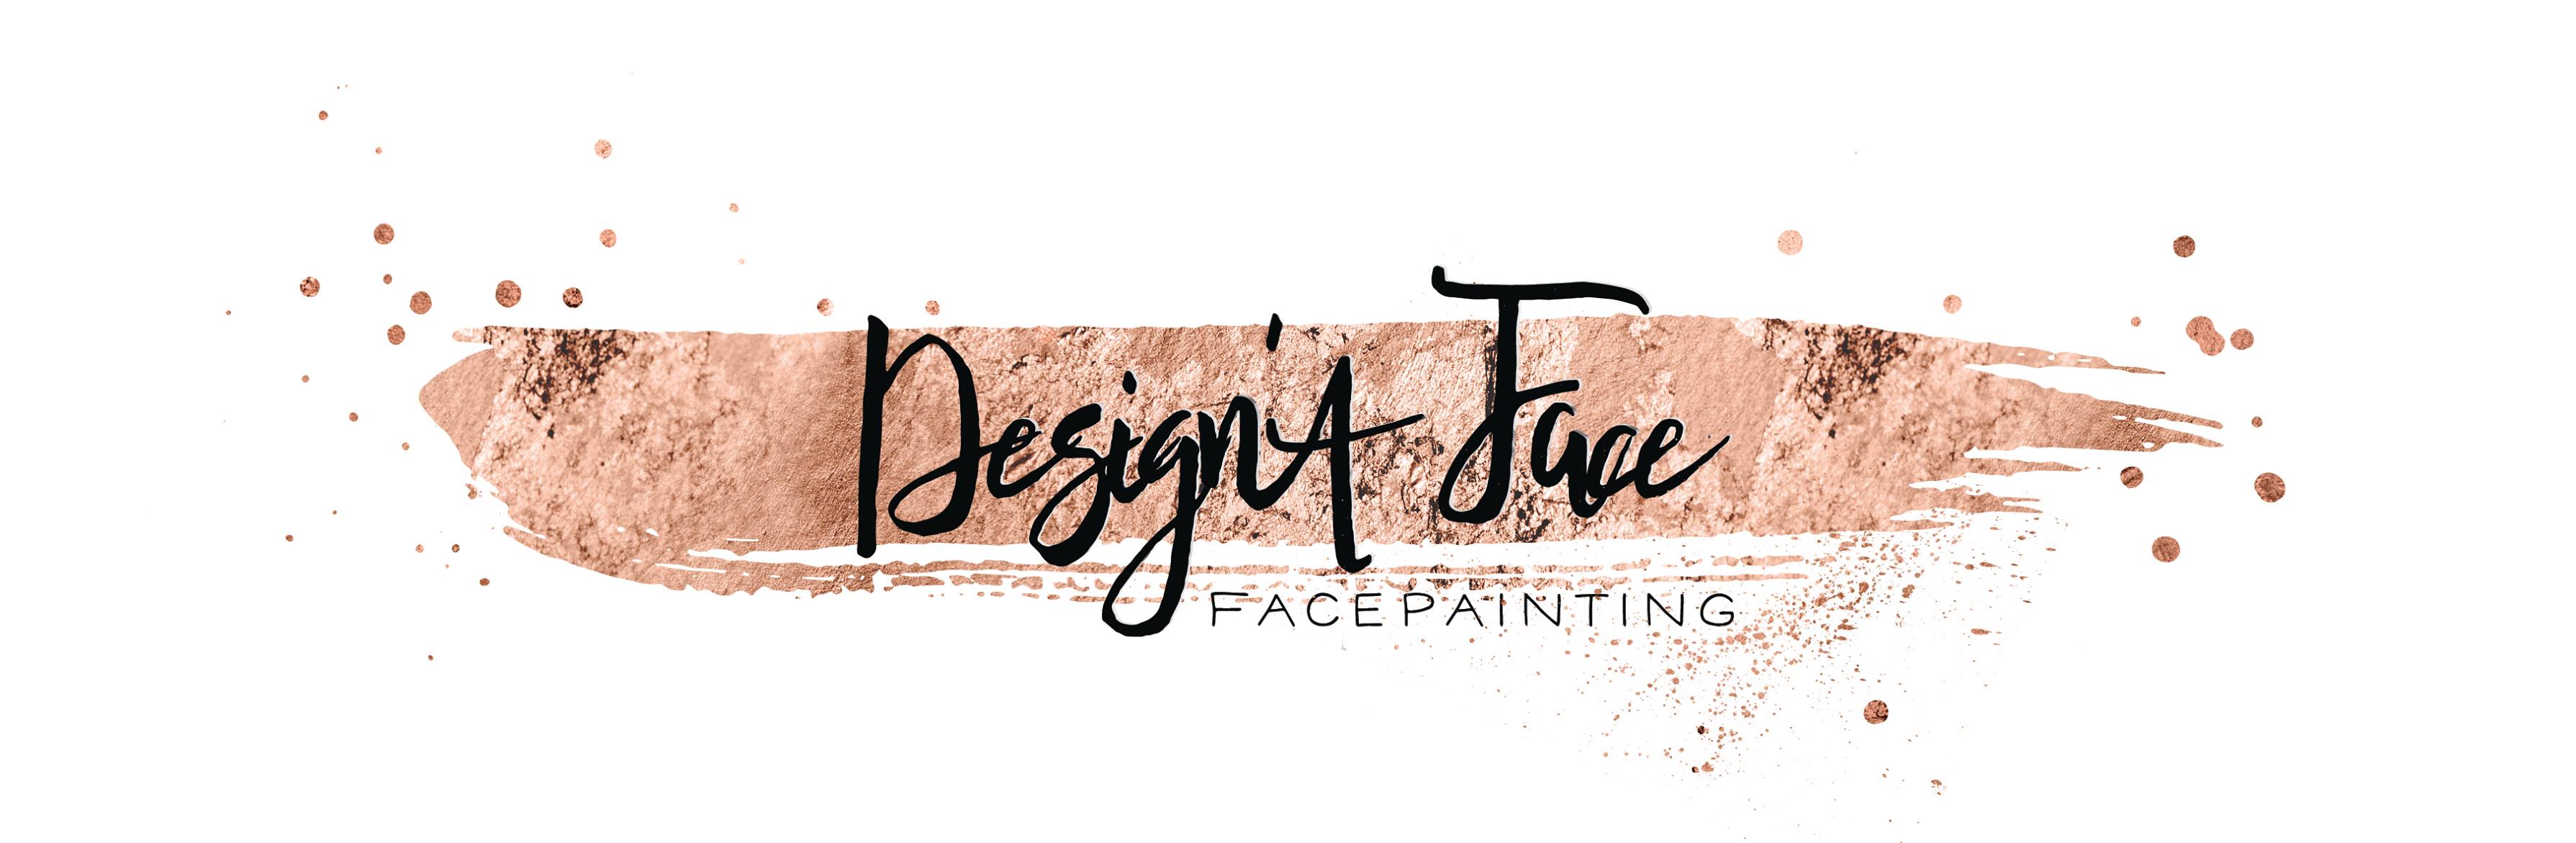 Design'a Face